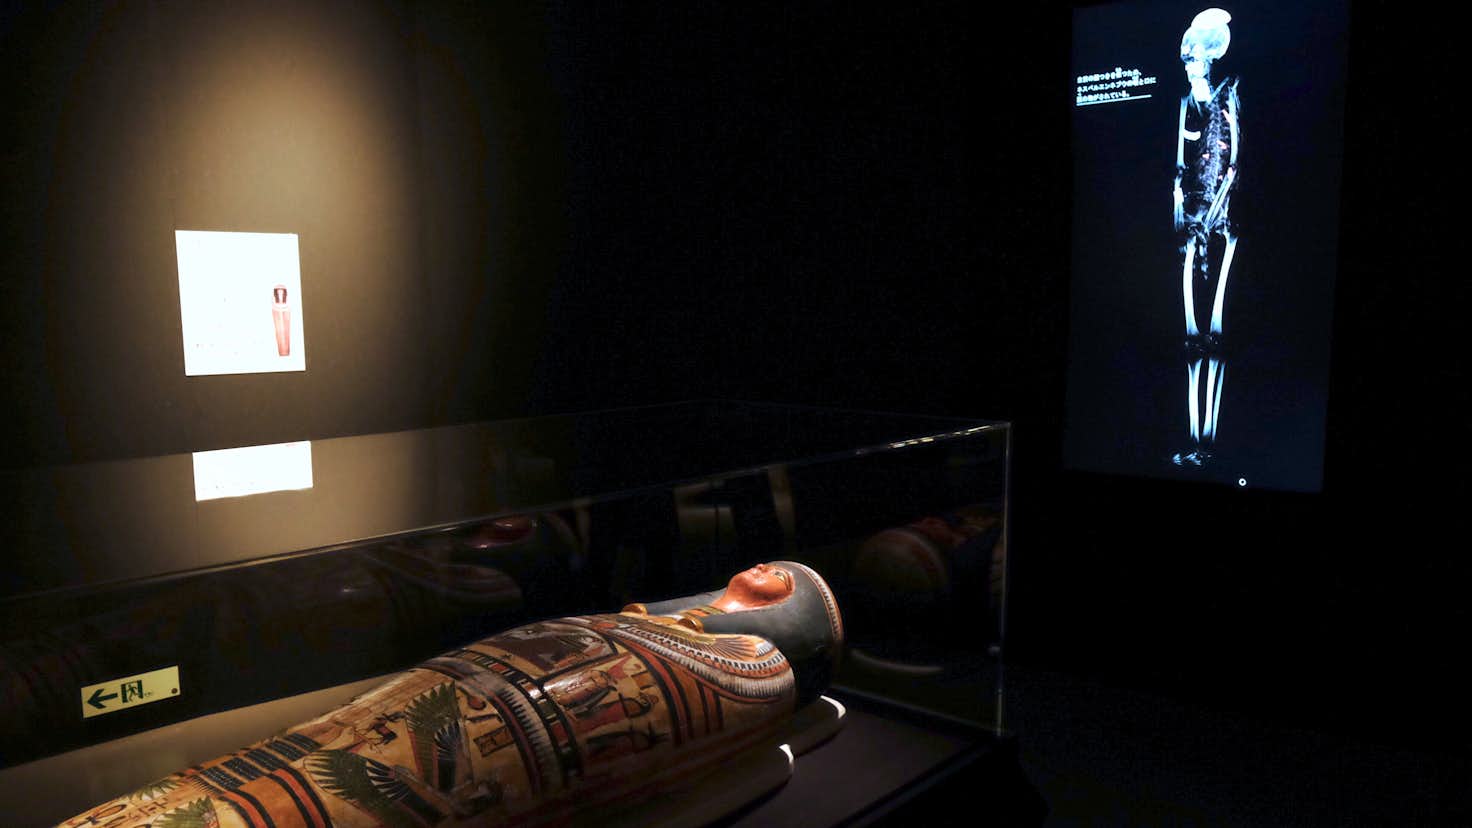 6体のミイラをctスキャンで解析 古代エジプト人の生き様を知る 大英博物館ミイラ展 古代エジプト6つの物語 が開幕 美術手帖